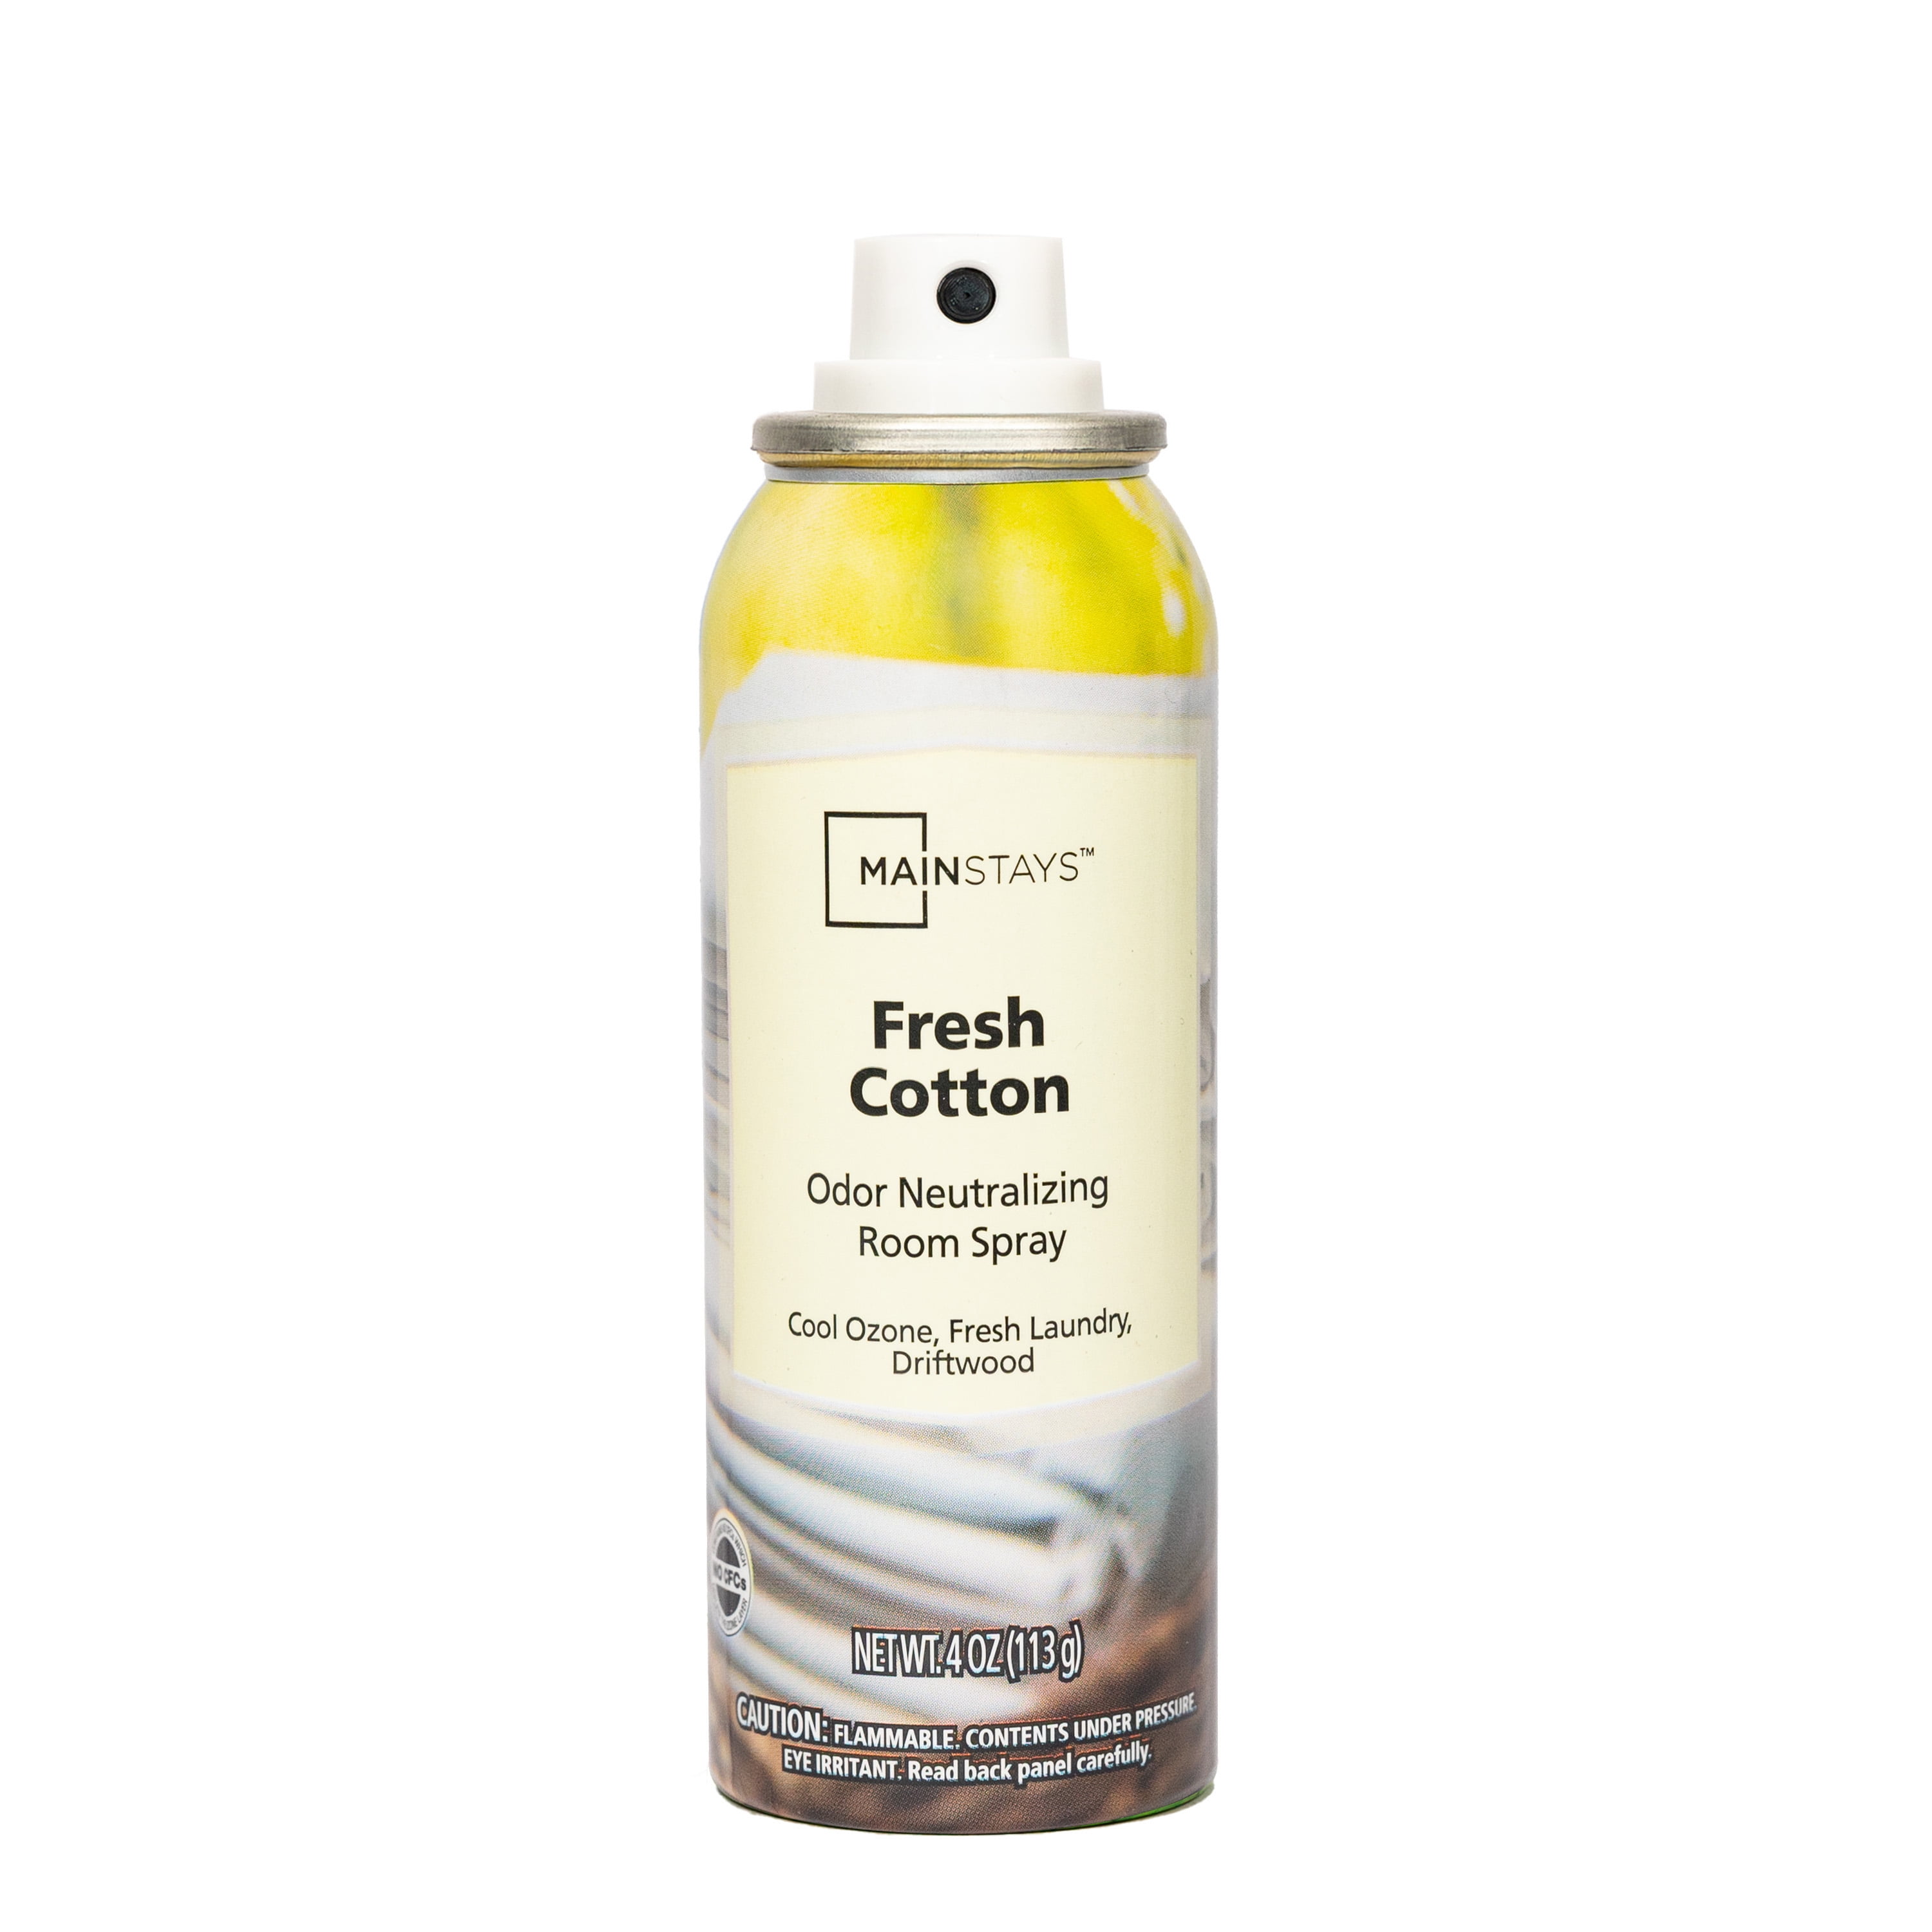 Mainstays Odor Neutralizing Room Spray, Fresh Cotton Air Freshner, 4 oz.